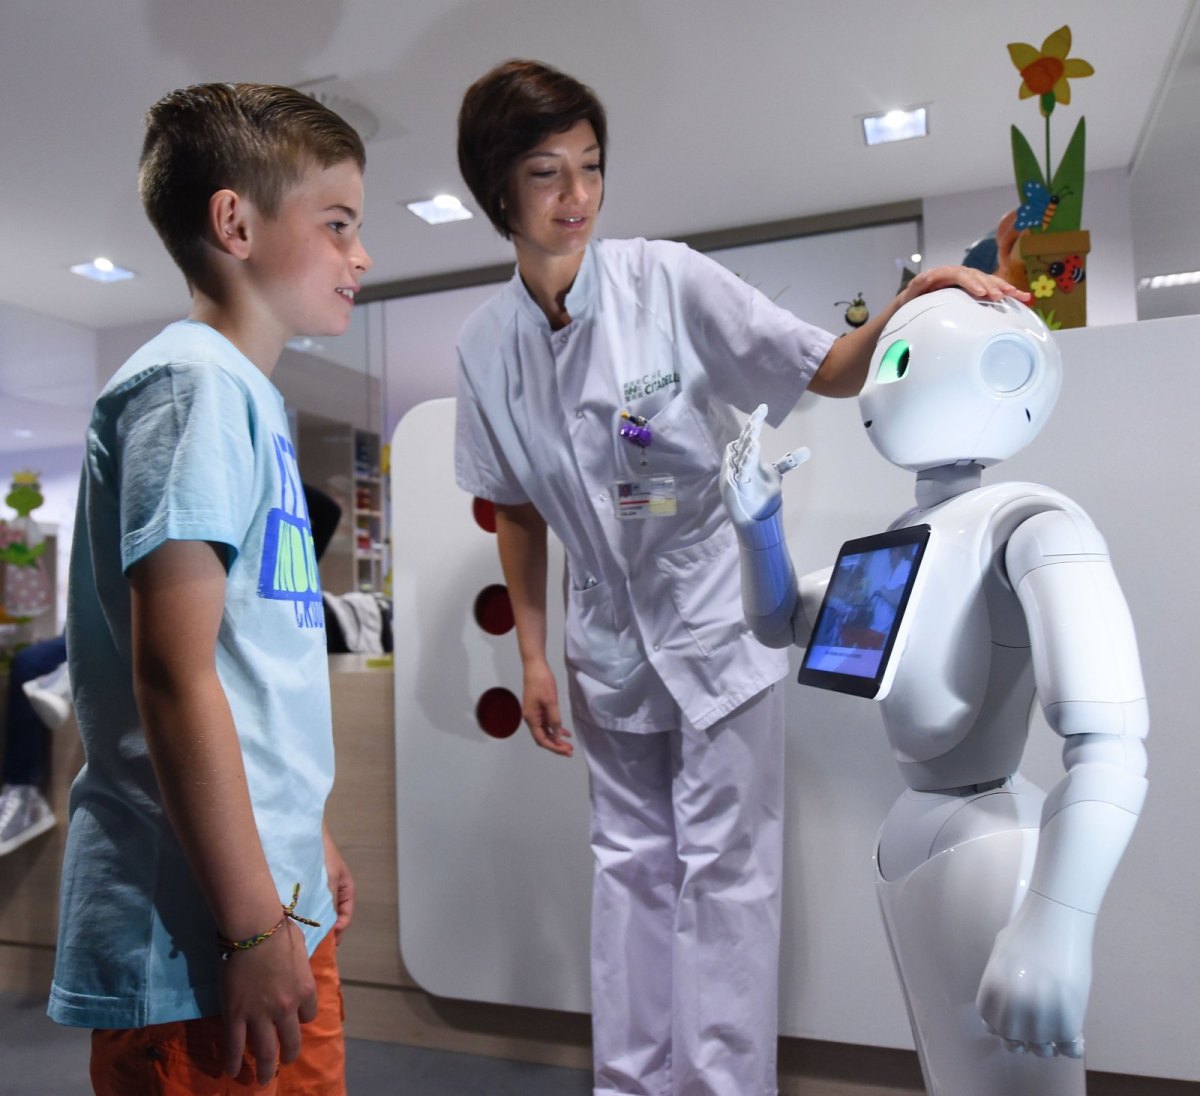 Roboter "Pepper" mit einer Krankenschwester und einem Jungen im Krankenhausflur